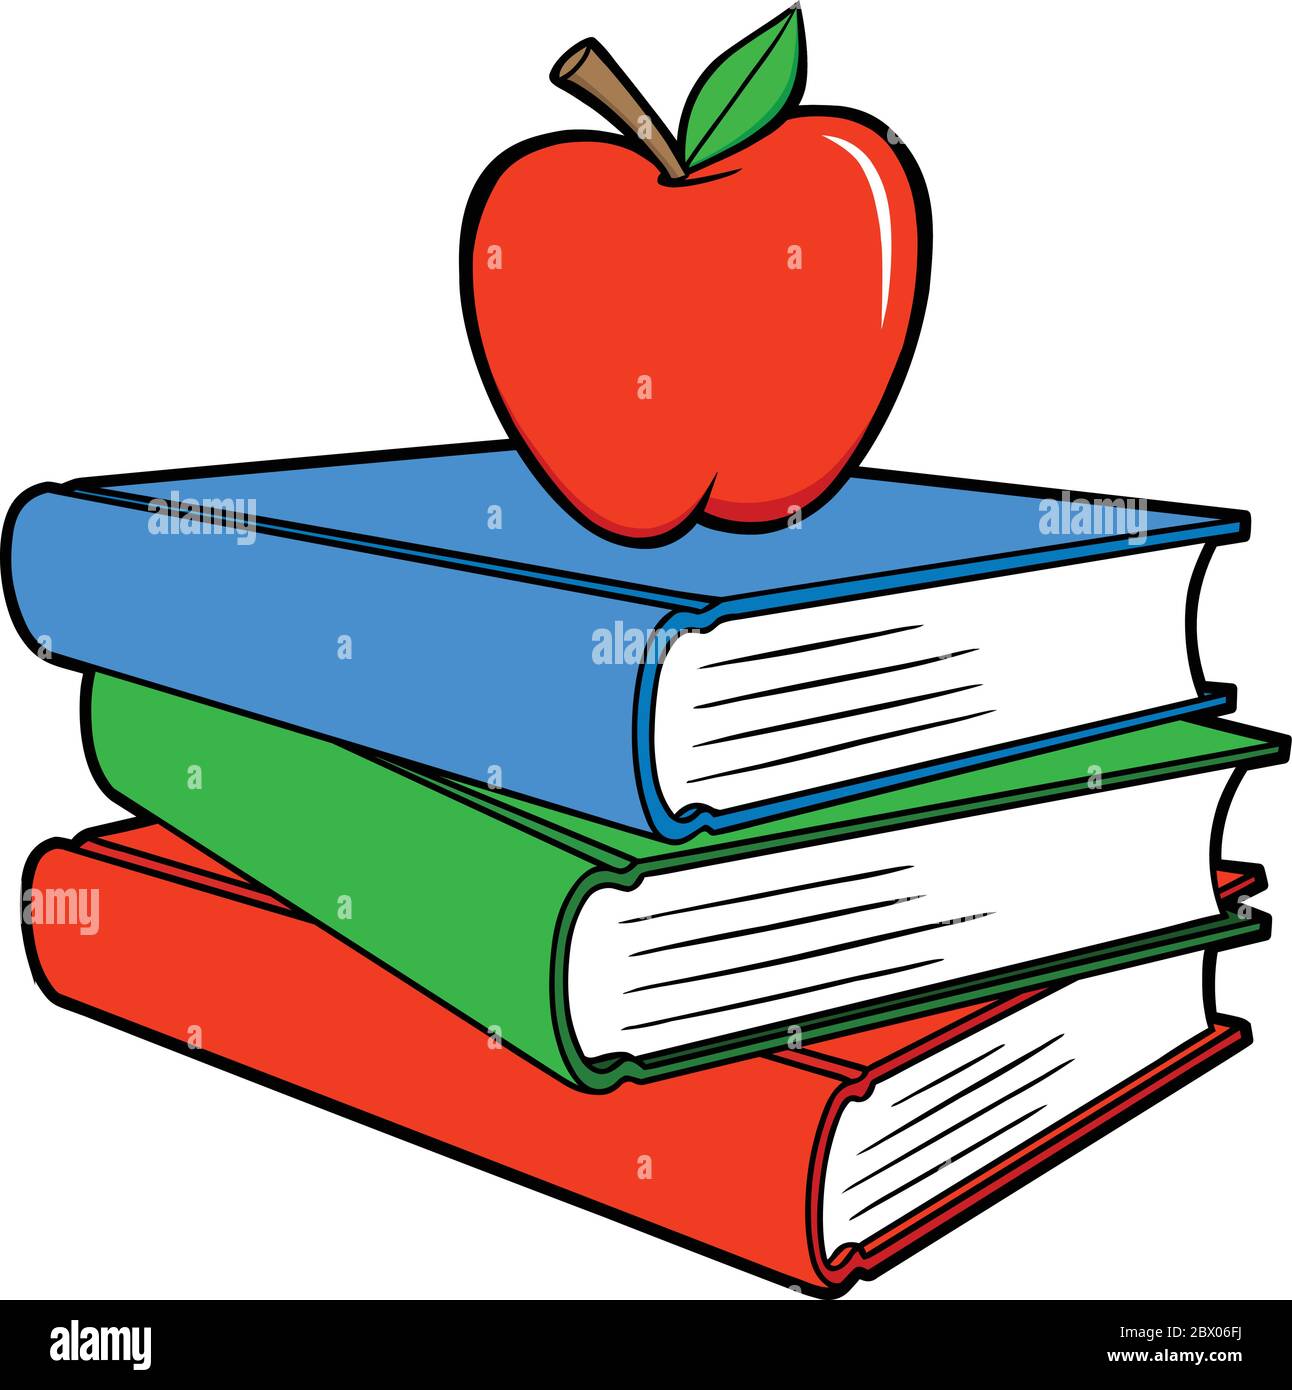 Libri scolastici con una Apple - un'illustrazione cartoon di alcuni libri scolastici con una Apple. Illustrazione Vettoriale